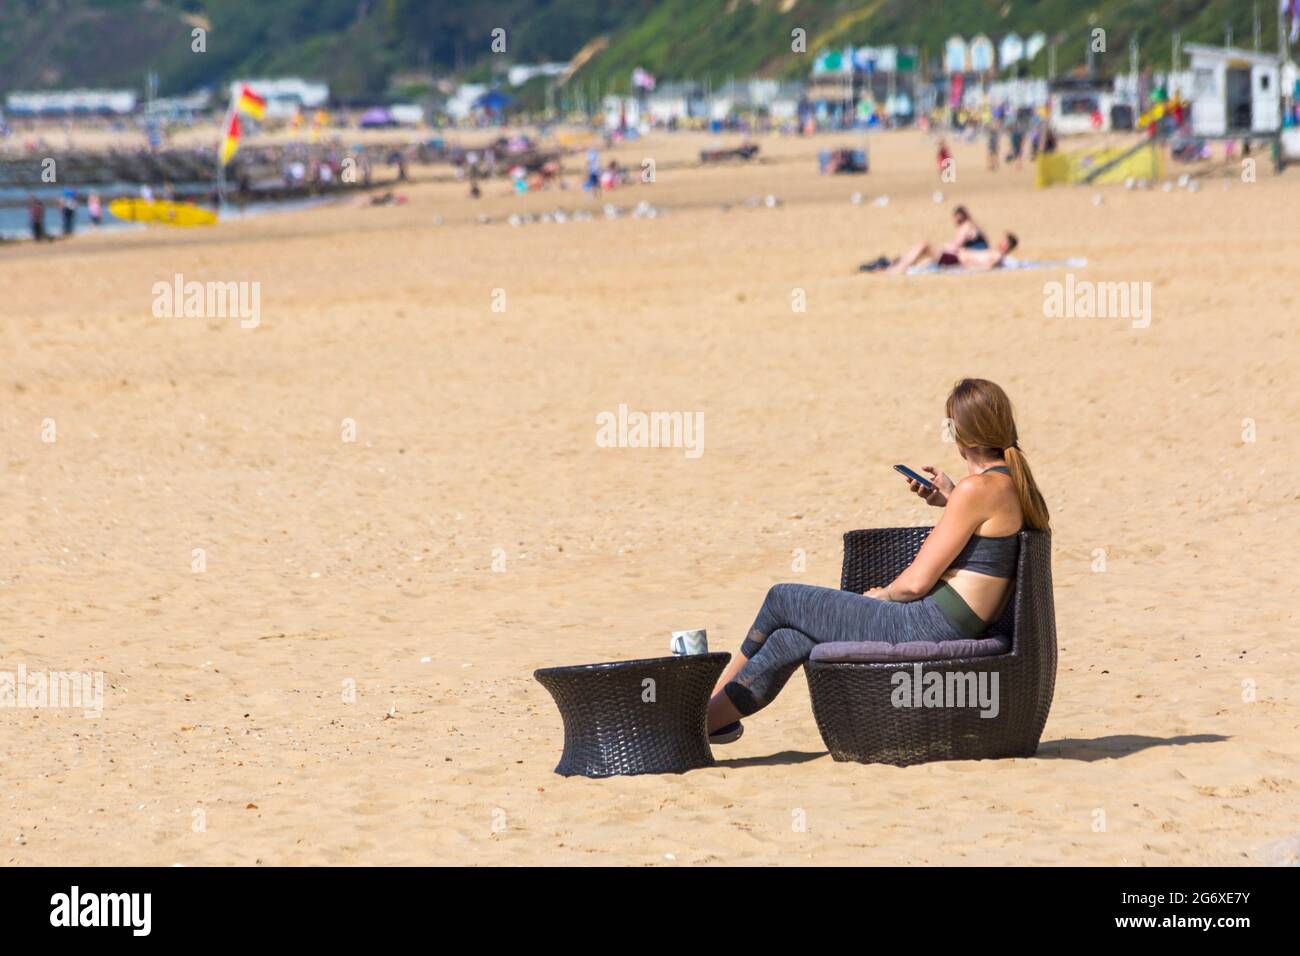 Bournemouth, Dorset, Royaume-Uni. 9 juillet 2021. Météo au Royaume-Uni : belle journée ensoleillée, mais humide sur les plages de Bournemouth, tandis que les amateurs de soleil se dirigent vers le bord de mer pour profiter du soleil. Femme assise sur une chaise en osier avec une tasse sur une table en osier sur le sable, tenant un téléphone portable smartphone. Crédit : Carolyn Jenkins/Alay Live News Banque D'Images